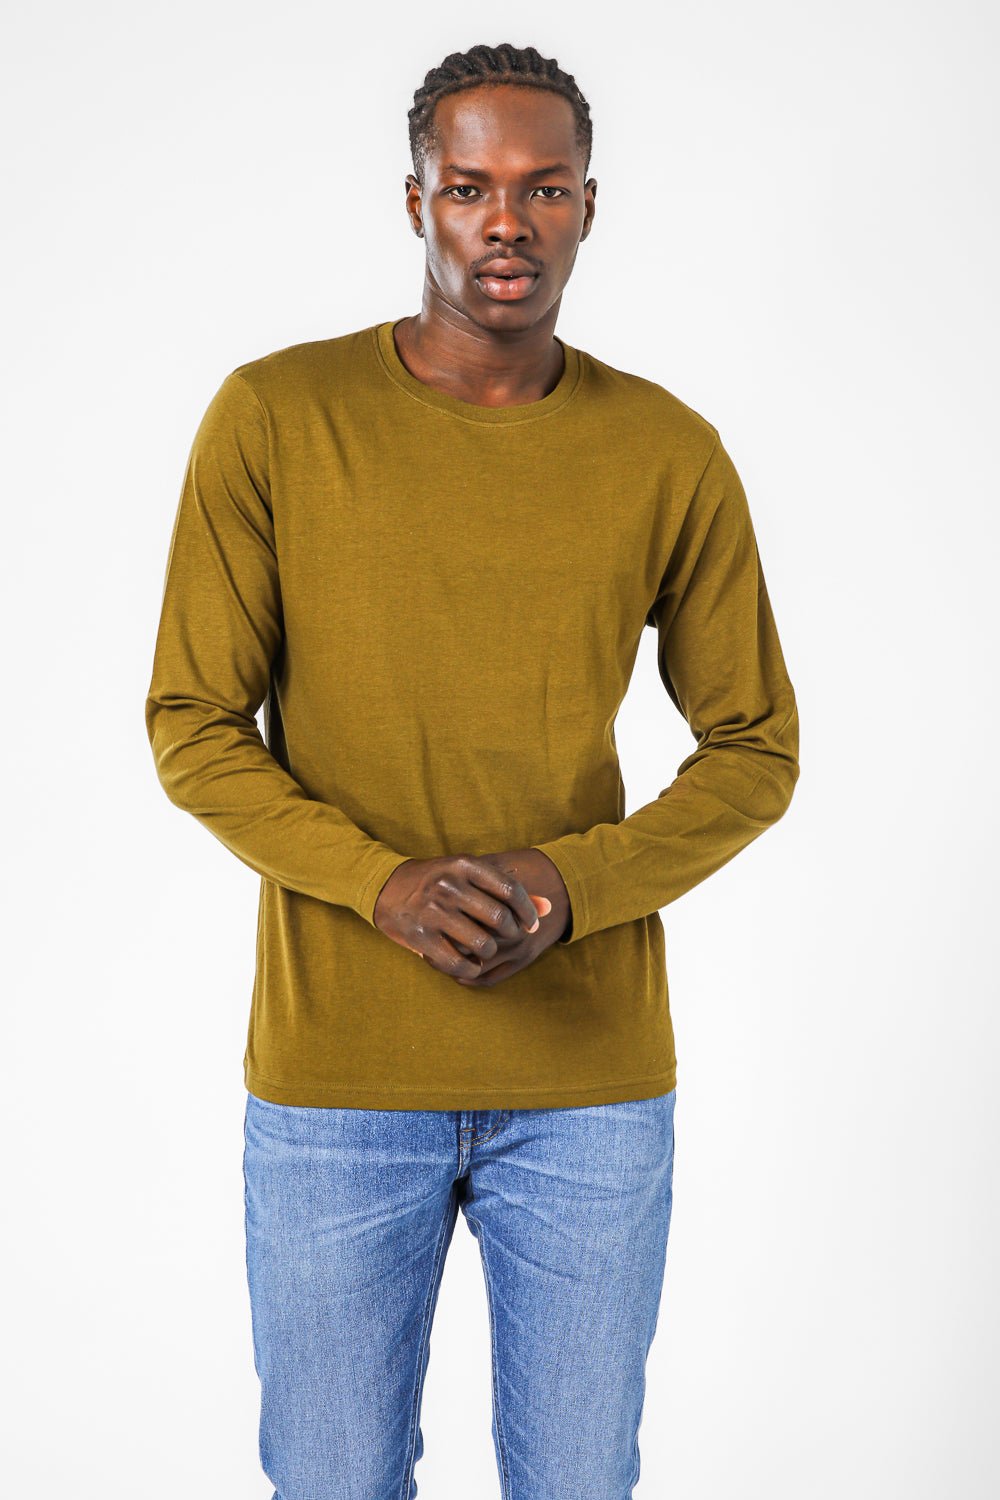 COOL 32 - חולצה תרמית לגבר בצבע ירוק - MASHBIR//365